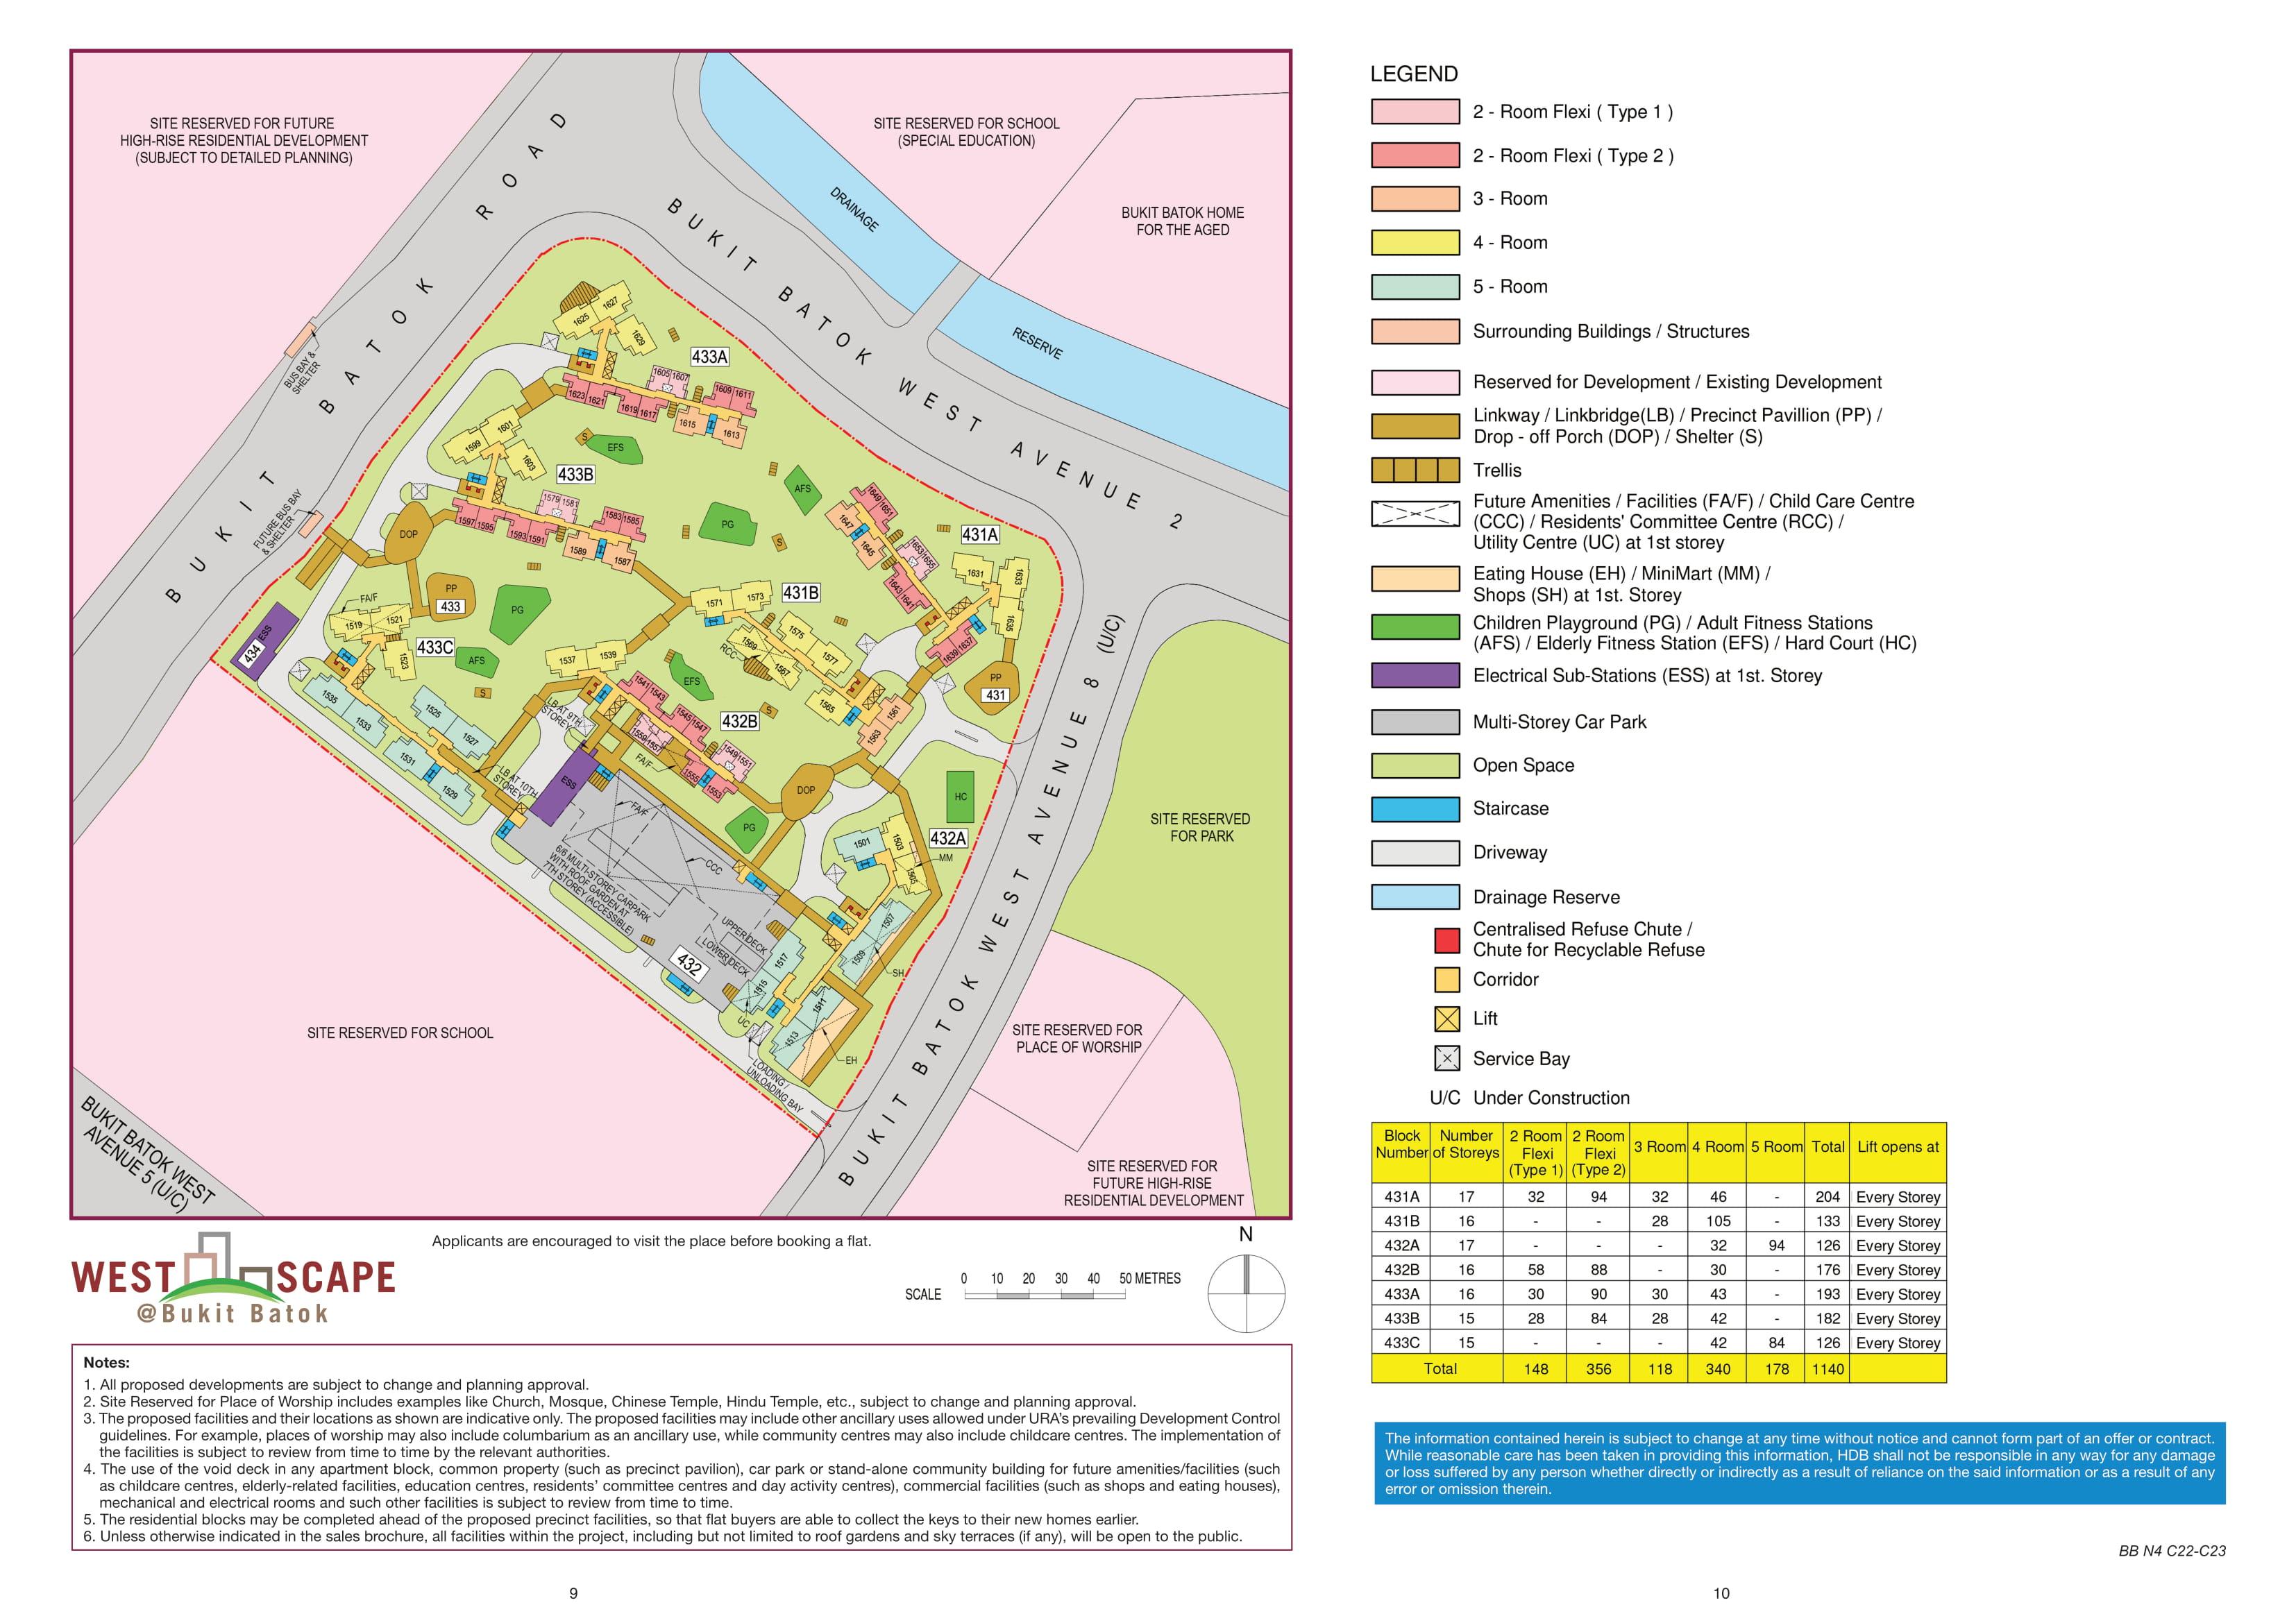 West Scape @ Bukit Batok Site Plan